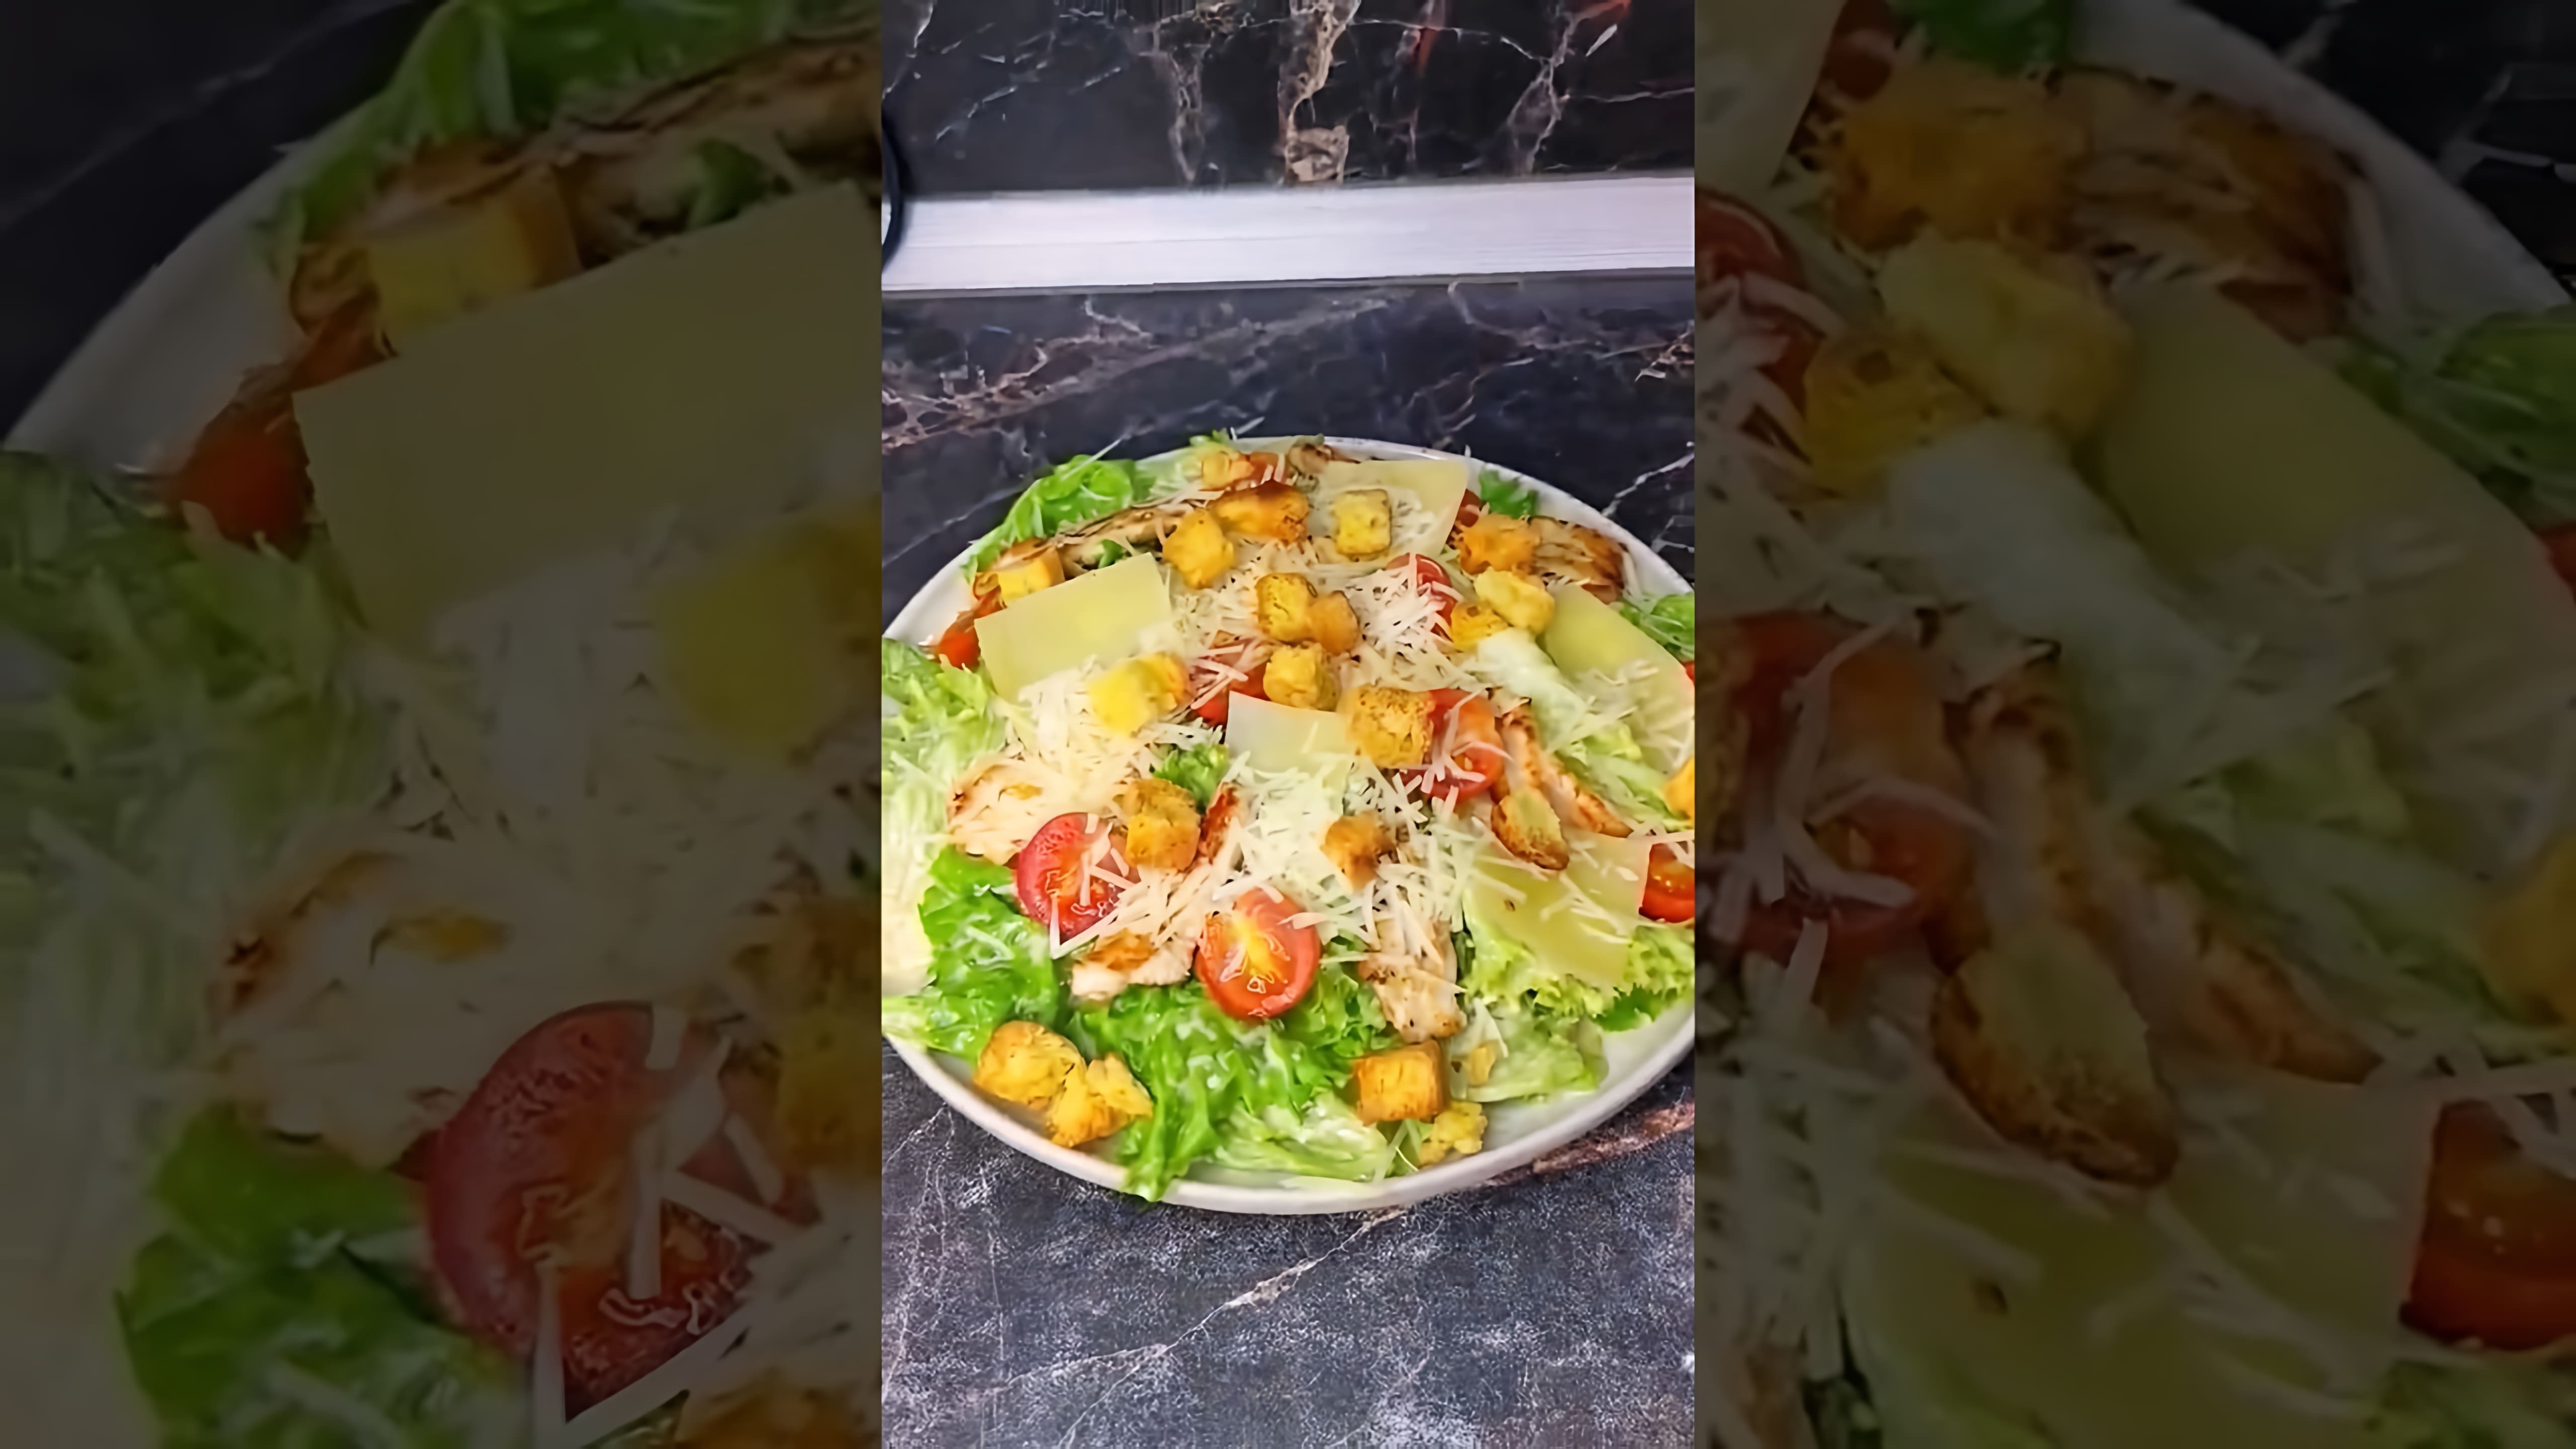 В этом видео демонстрируется процесс приготовления салата Цезарь с курицей